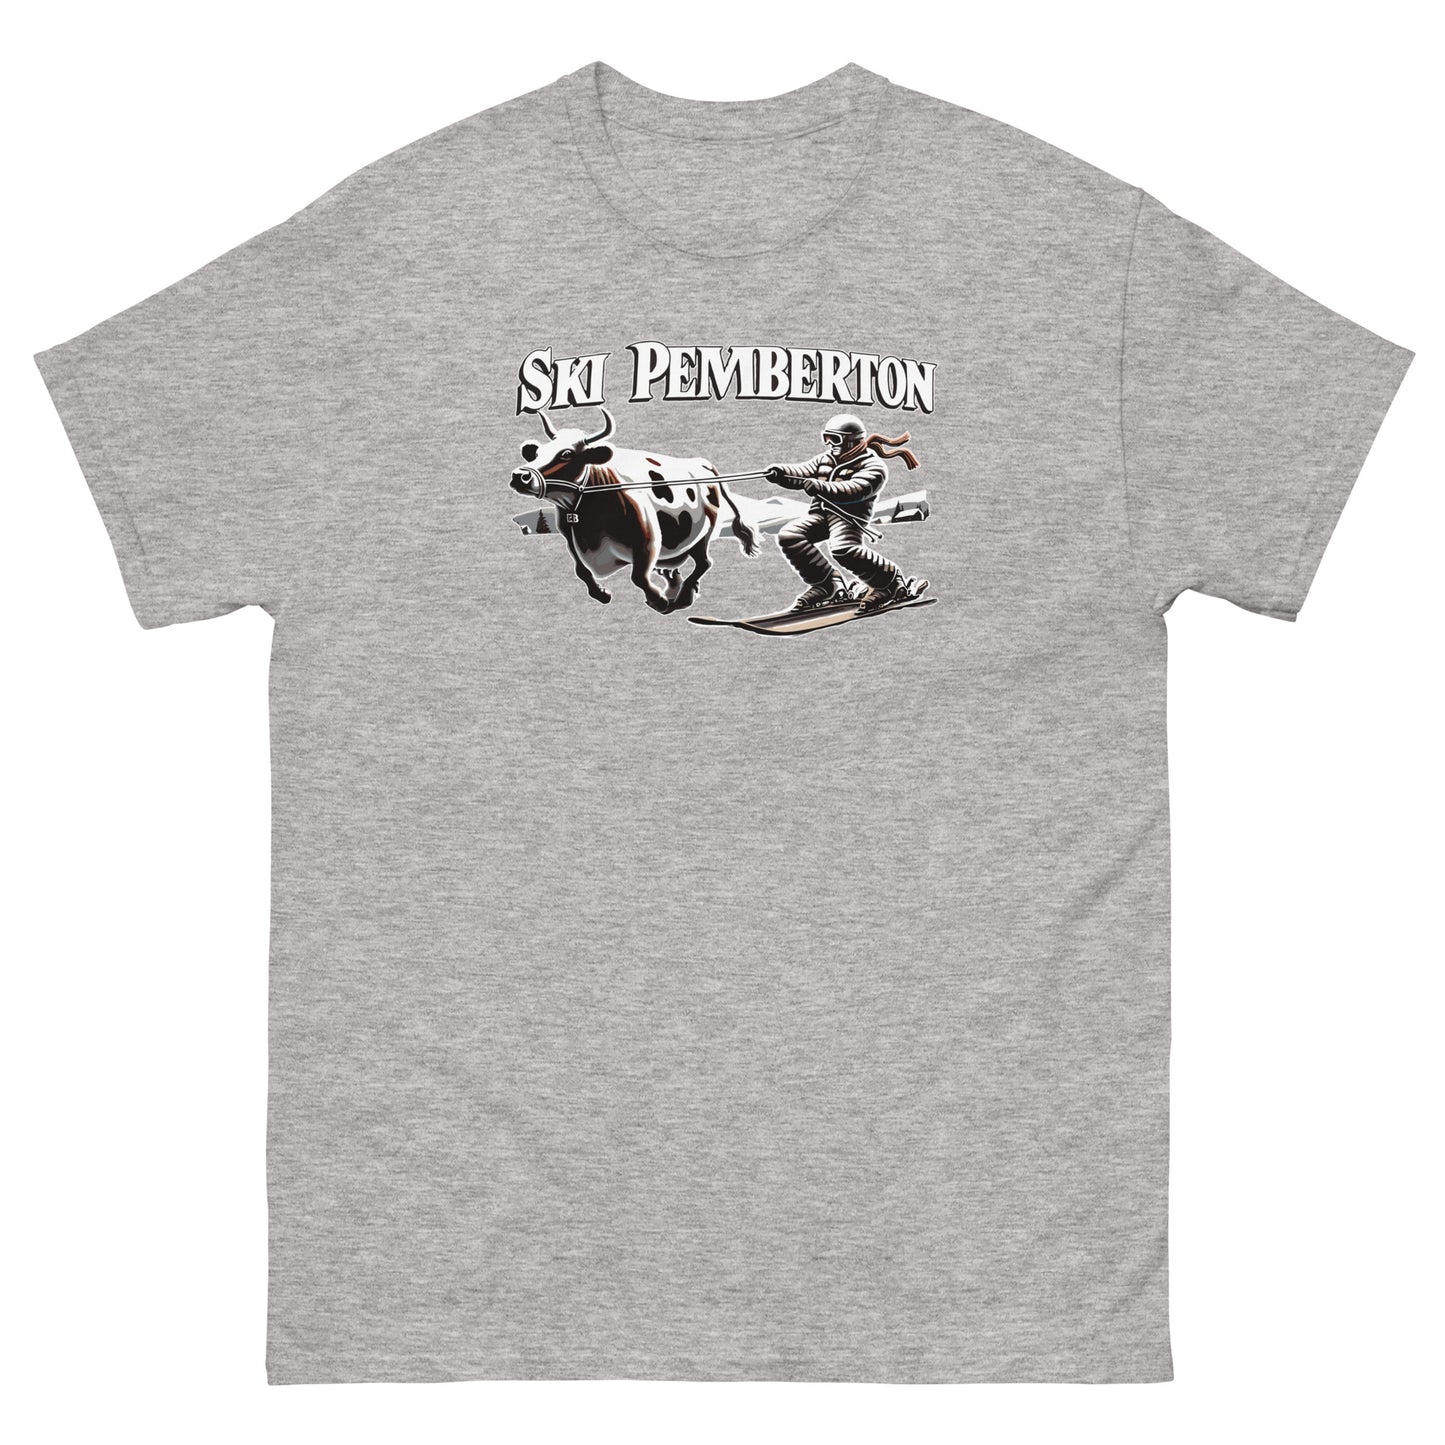 Ski Pemberton T-shirt printed by Whistler Shirts